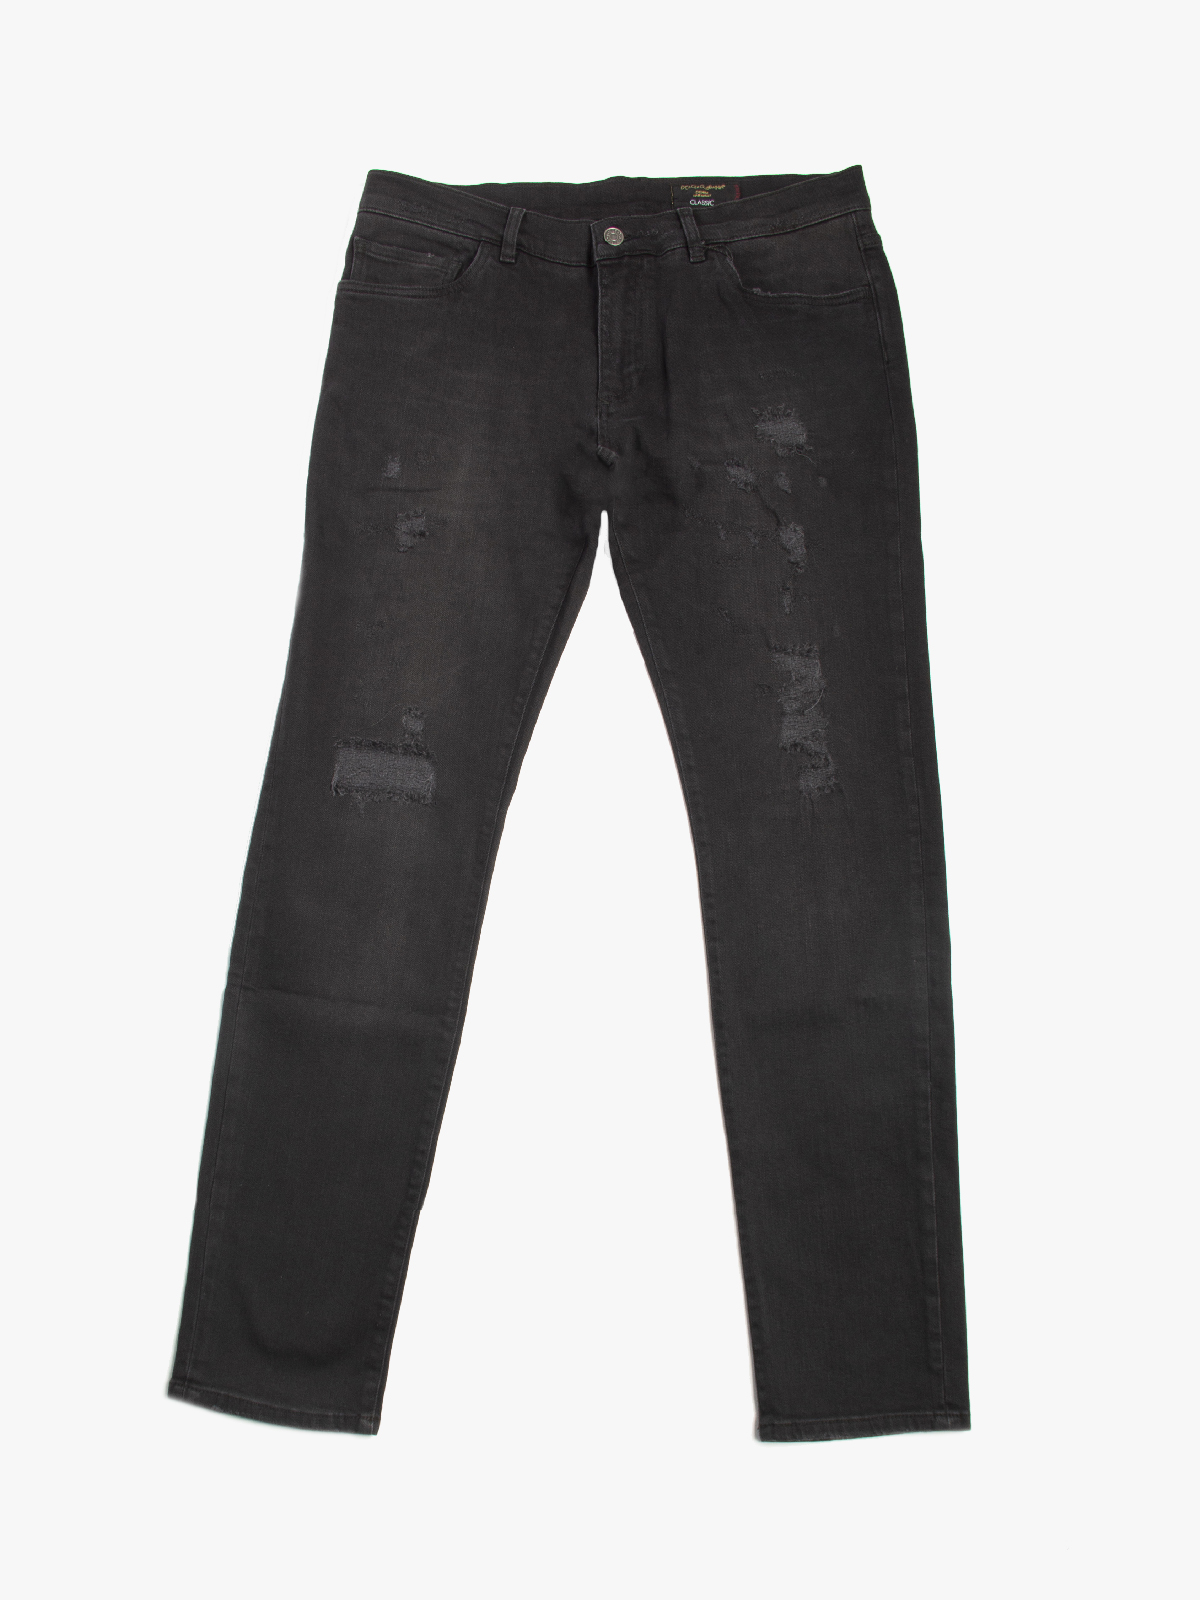 d&g black jeans